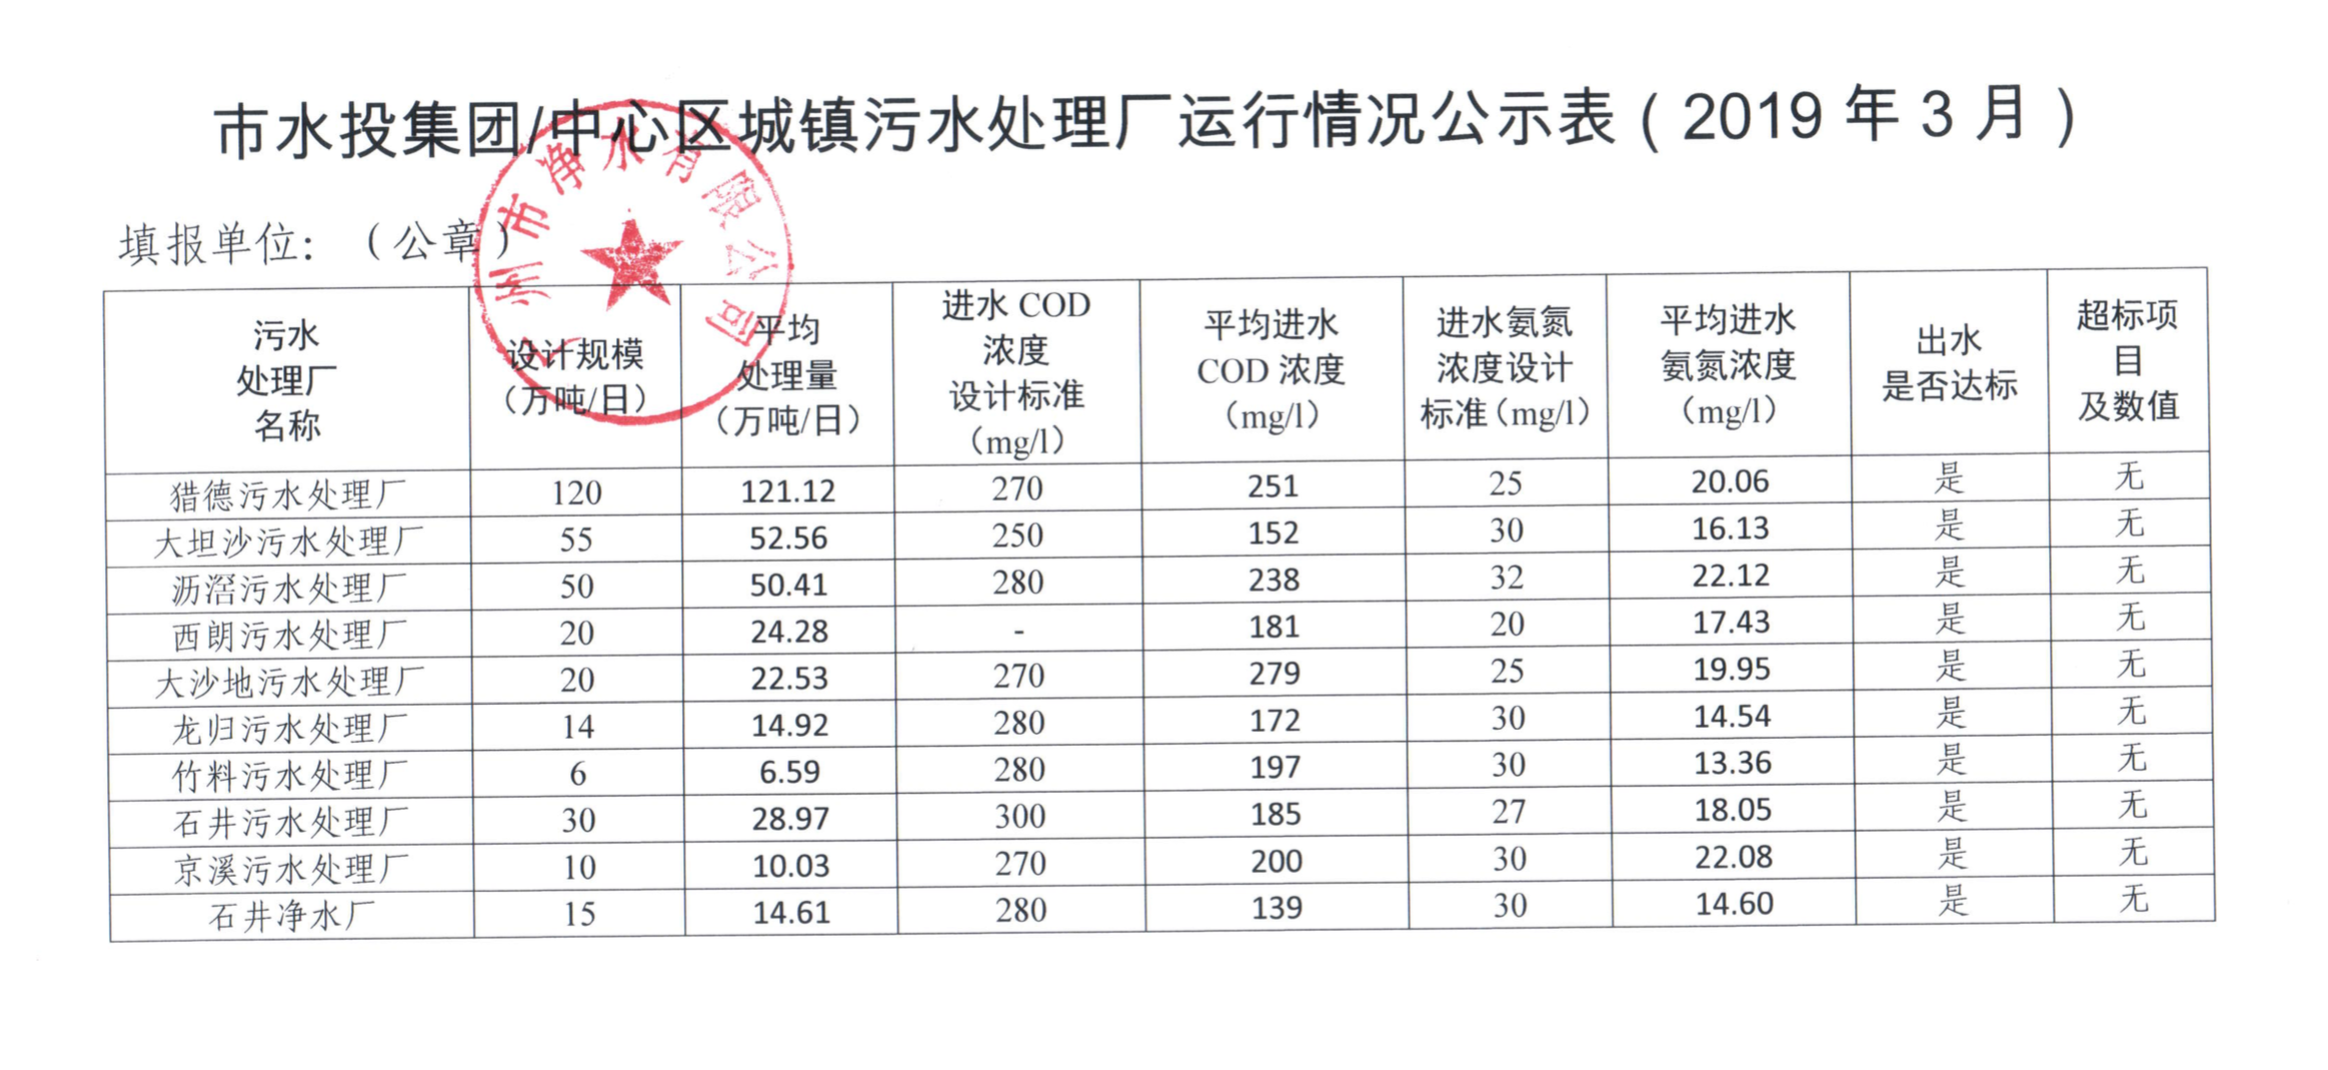 中心城区城镇污水处理厂运行情况公示表（2019年3月）.png